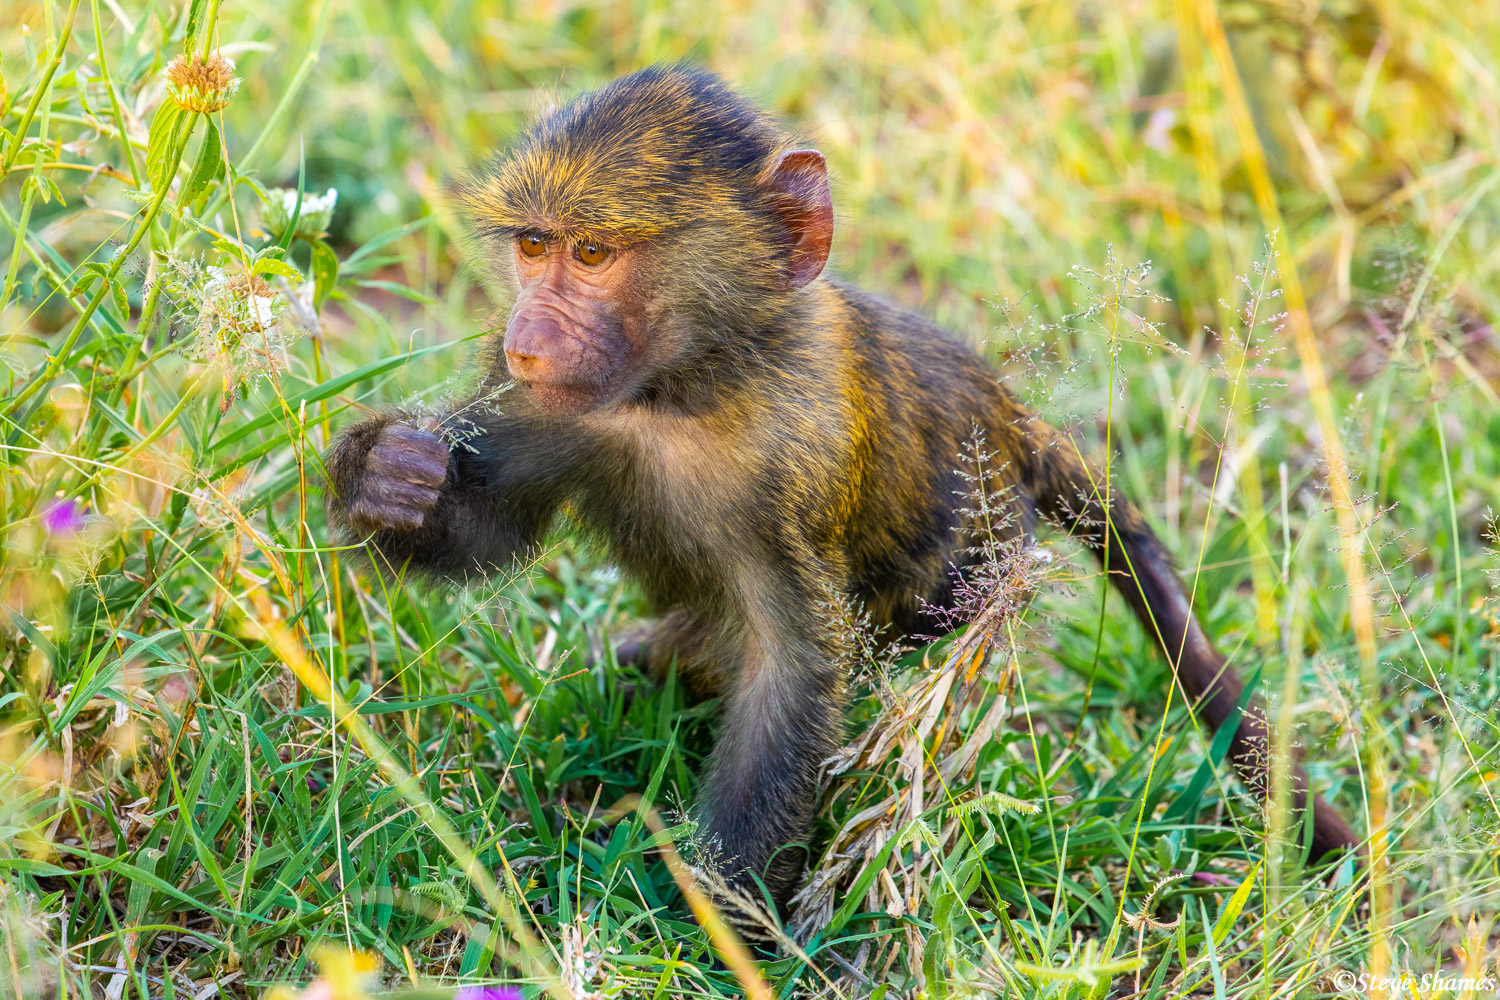 A baby baboon munching on a little grass.